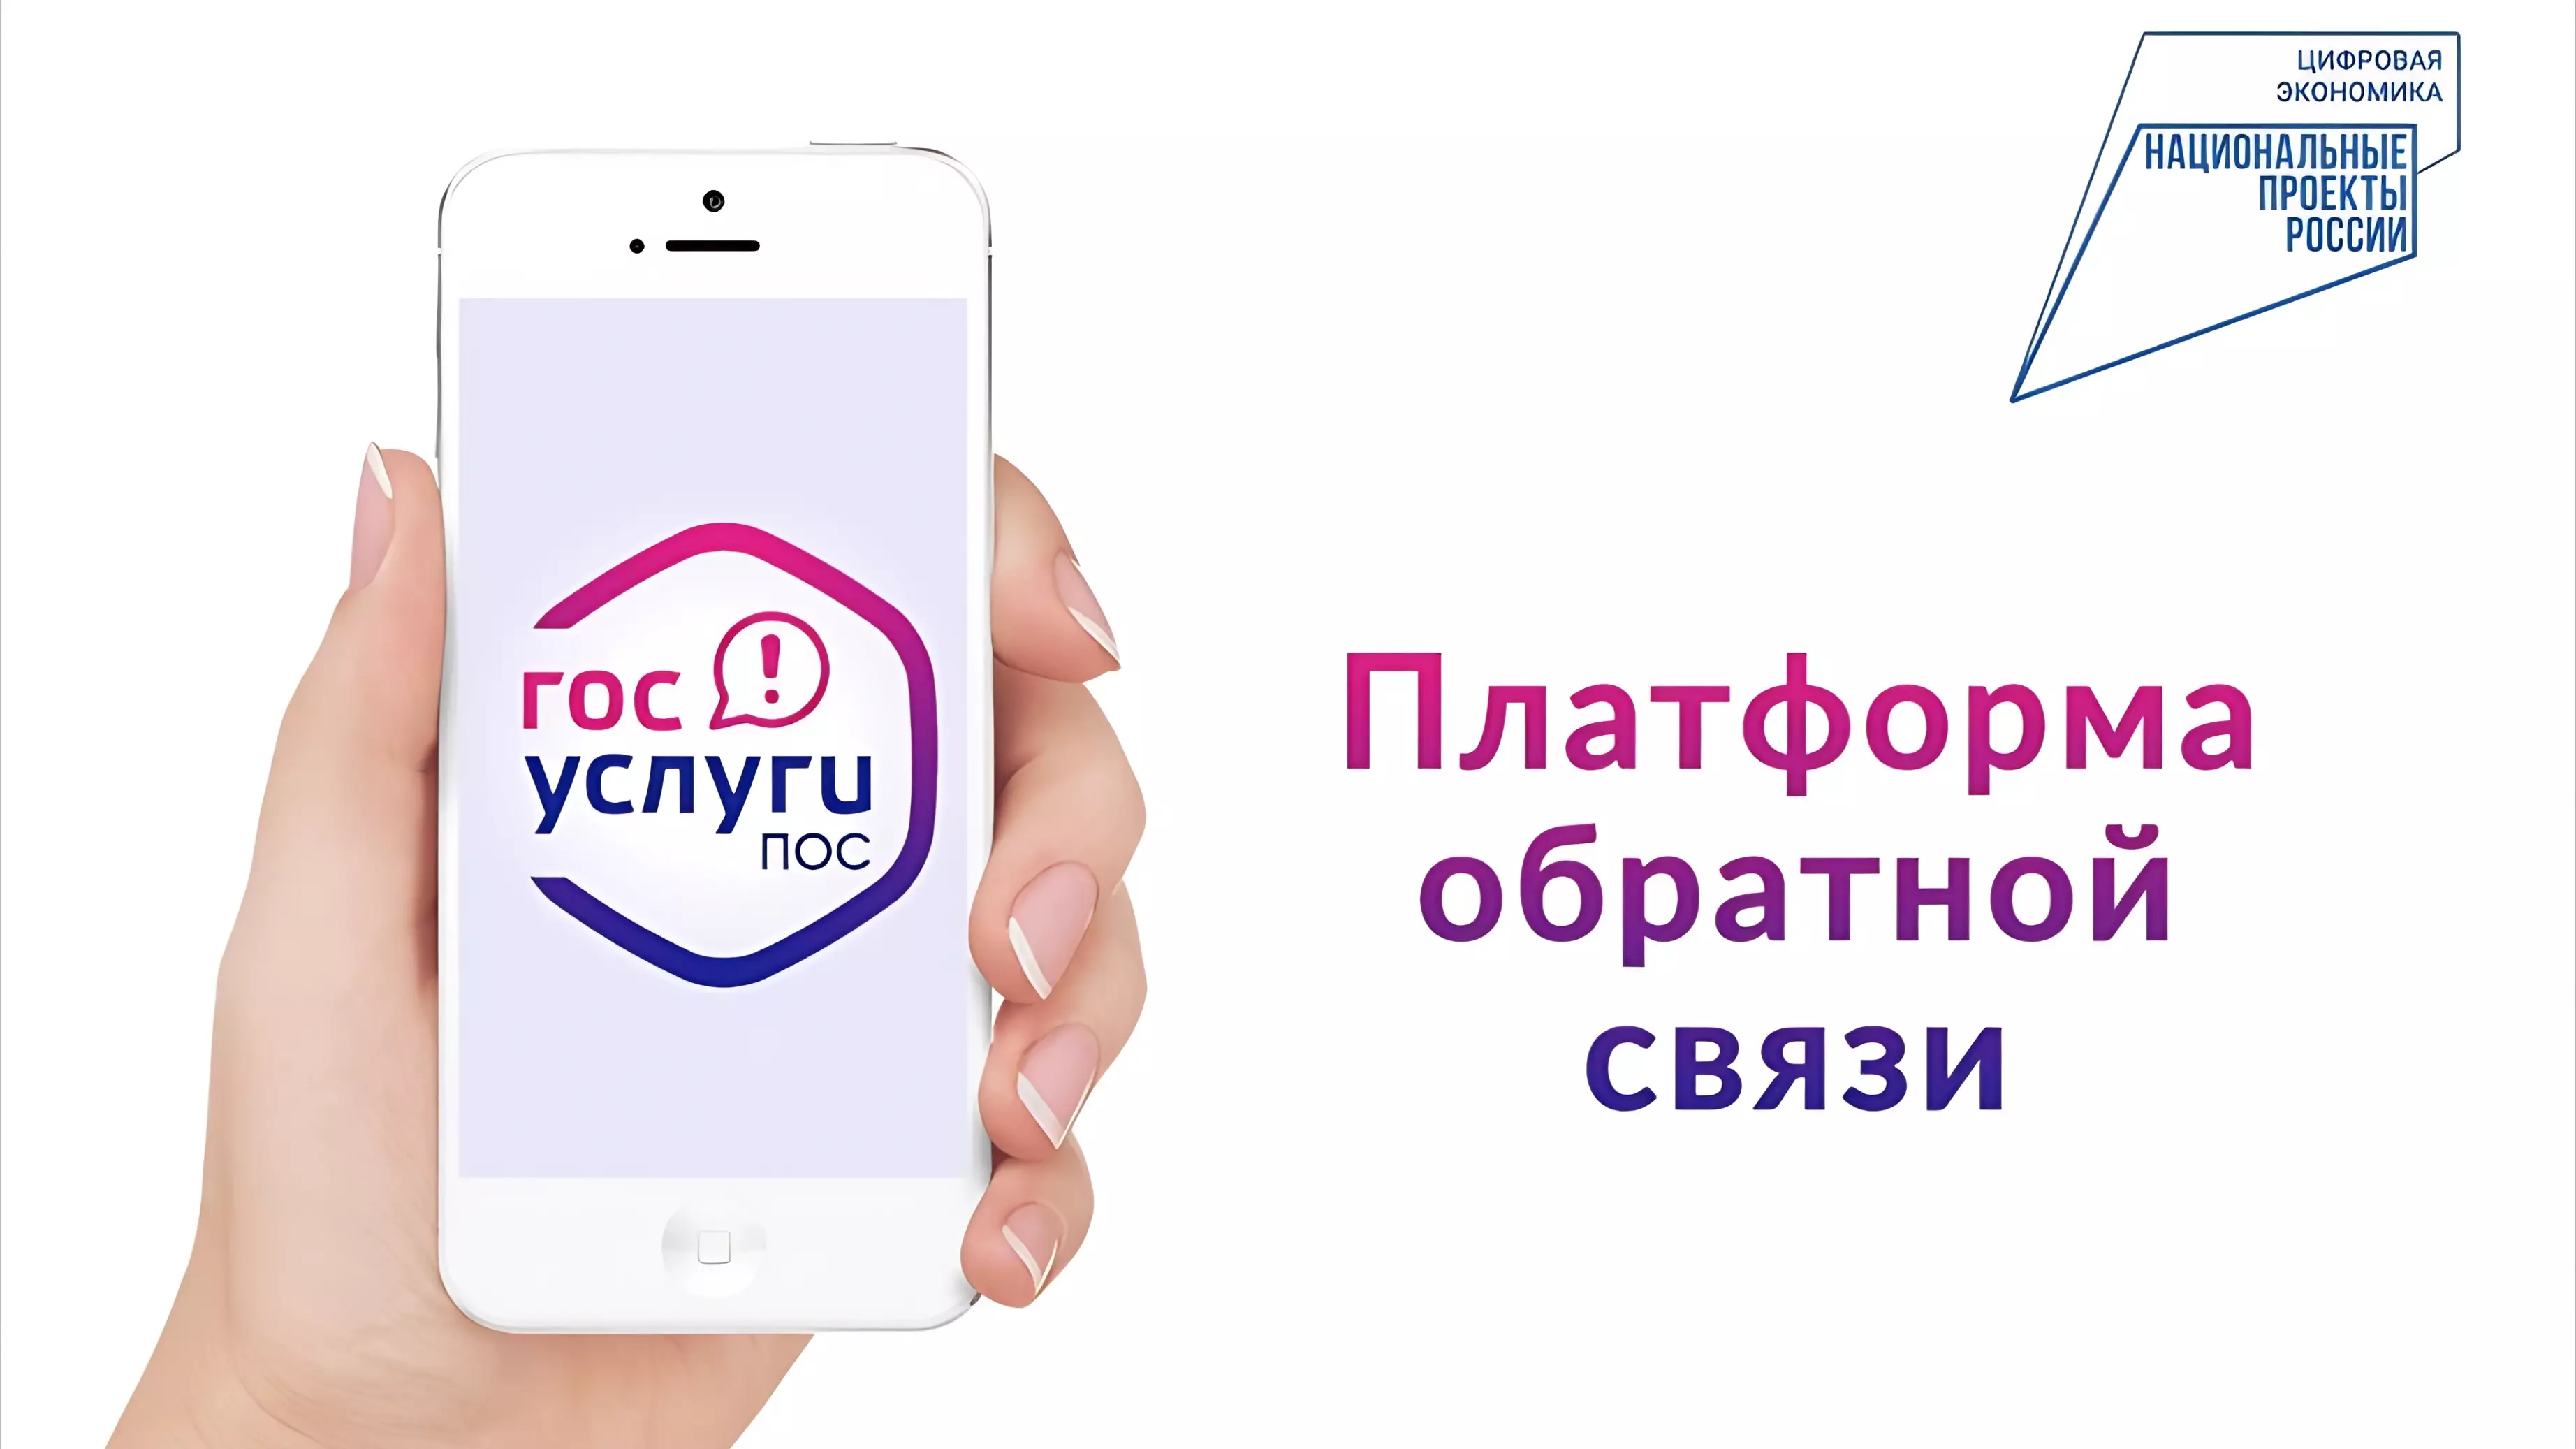 27 тысяч обращений от жителей Хабаровского края обработано на платформе связи